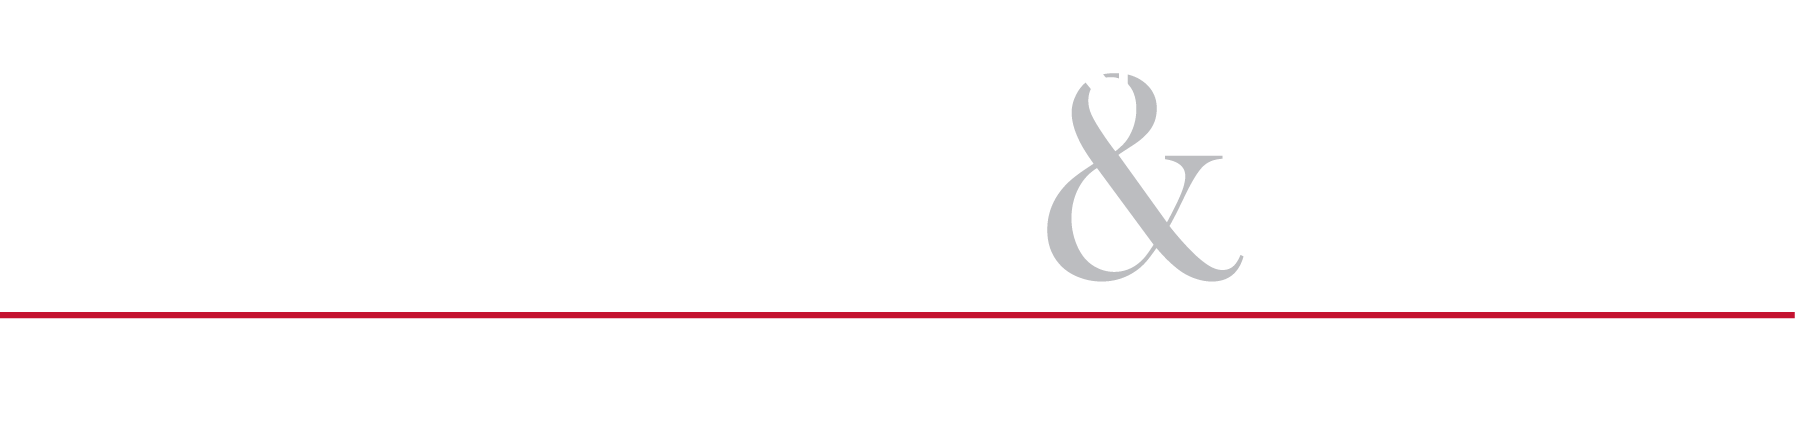 Allen, Allen, Allen y Allen, PC